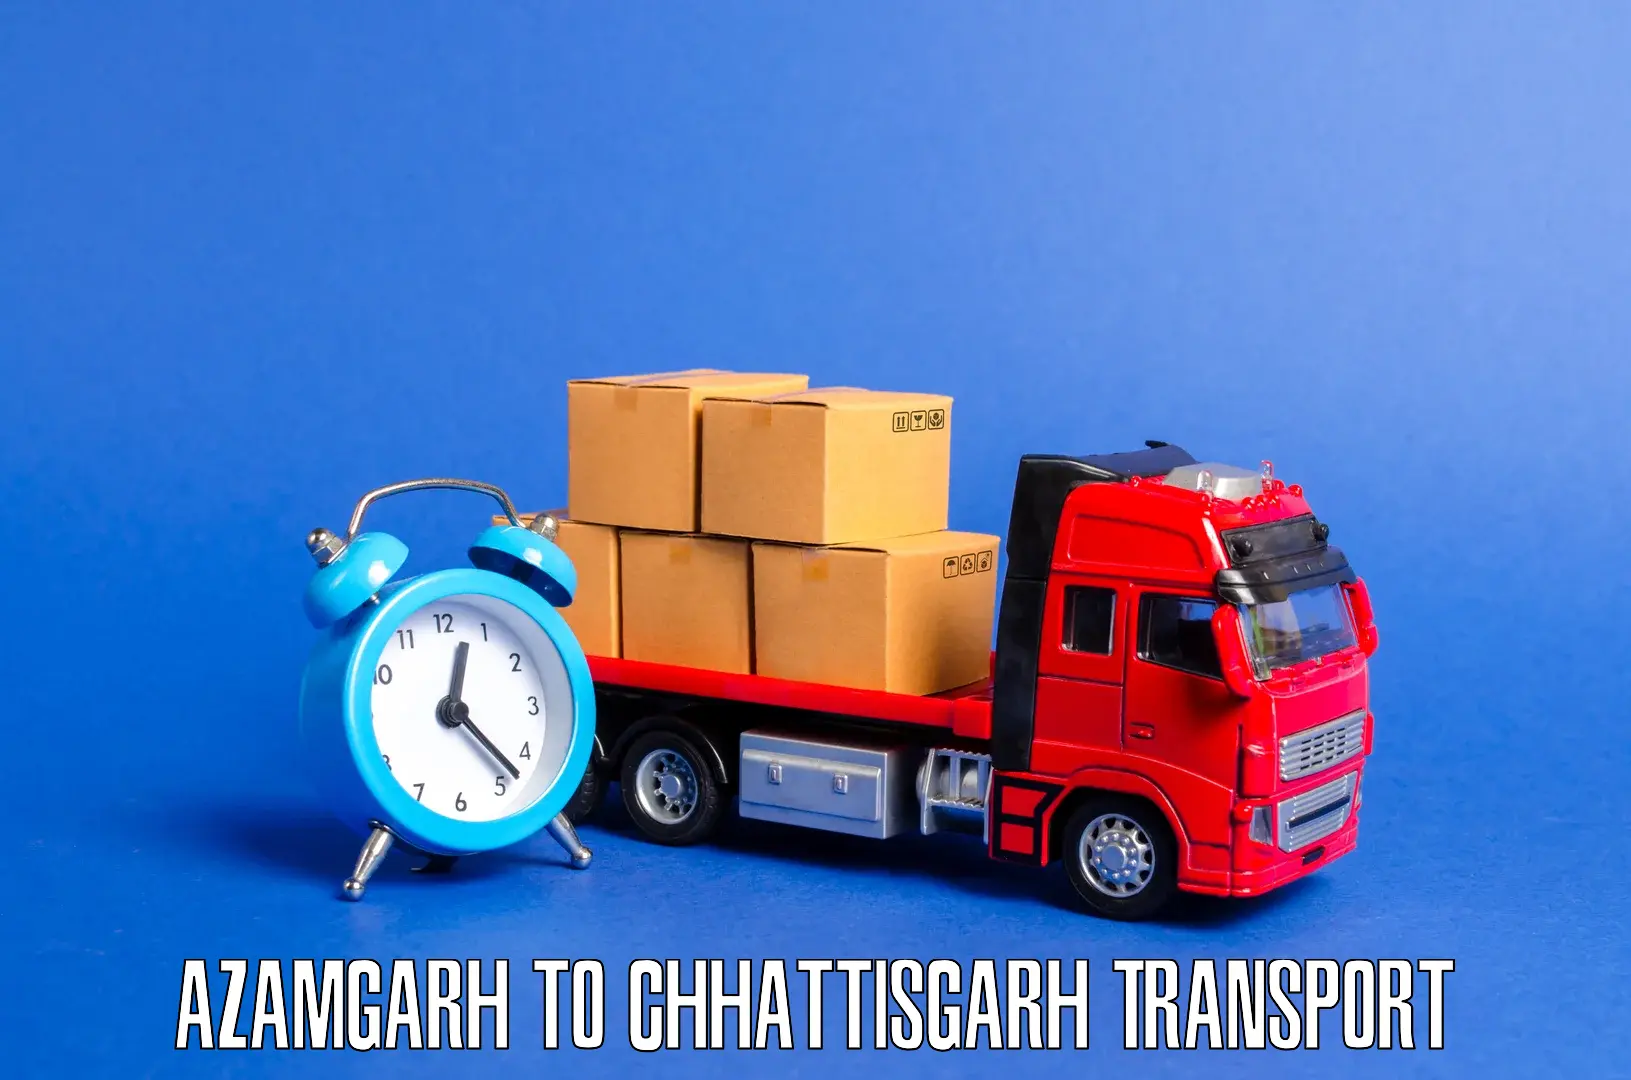 Interstate transport services Azamgarh to Bijapur Chhattisgarh